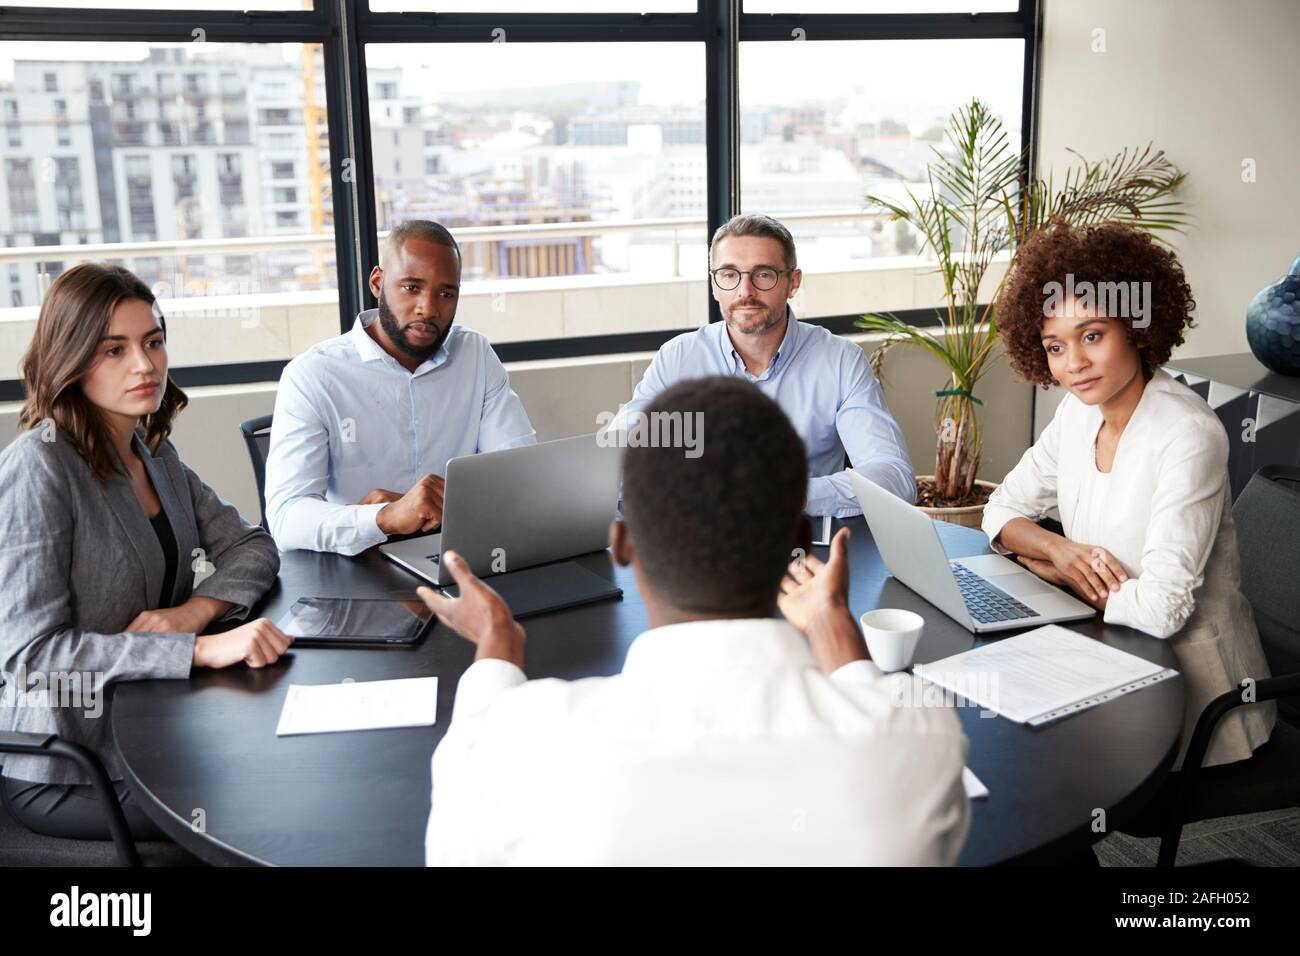 Corporate Business Personen in einem Meeting Zimmer hören zu einem Kollegen sprechen, Erhöhte Ansicht Stockfoto